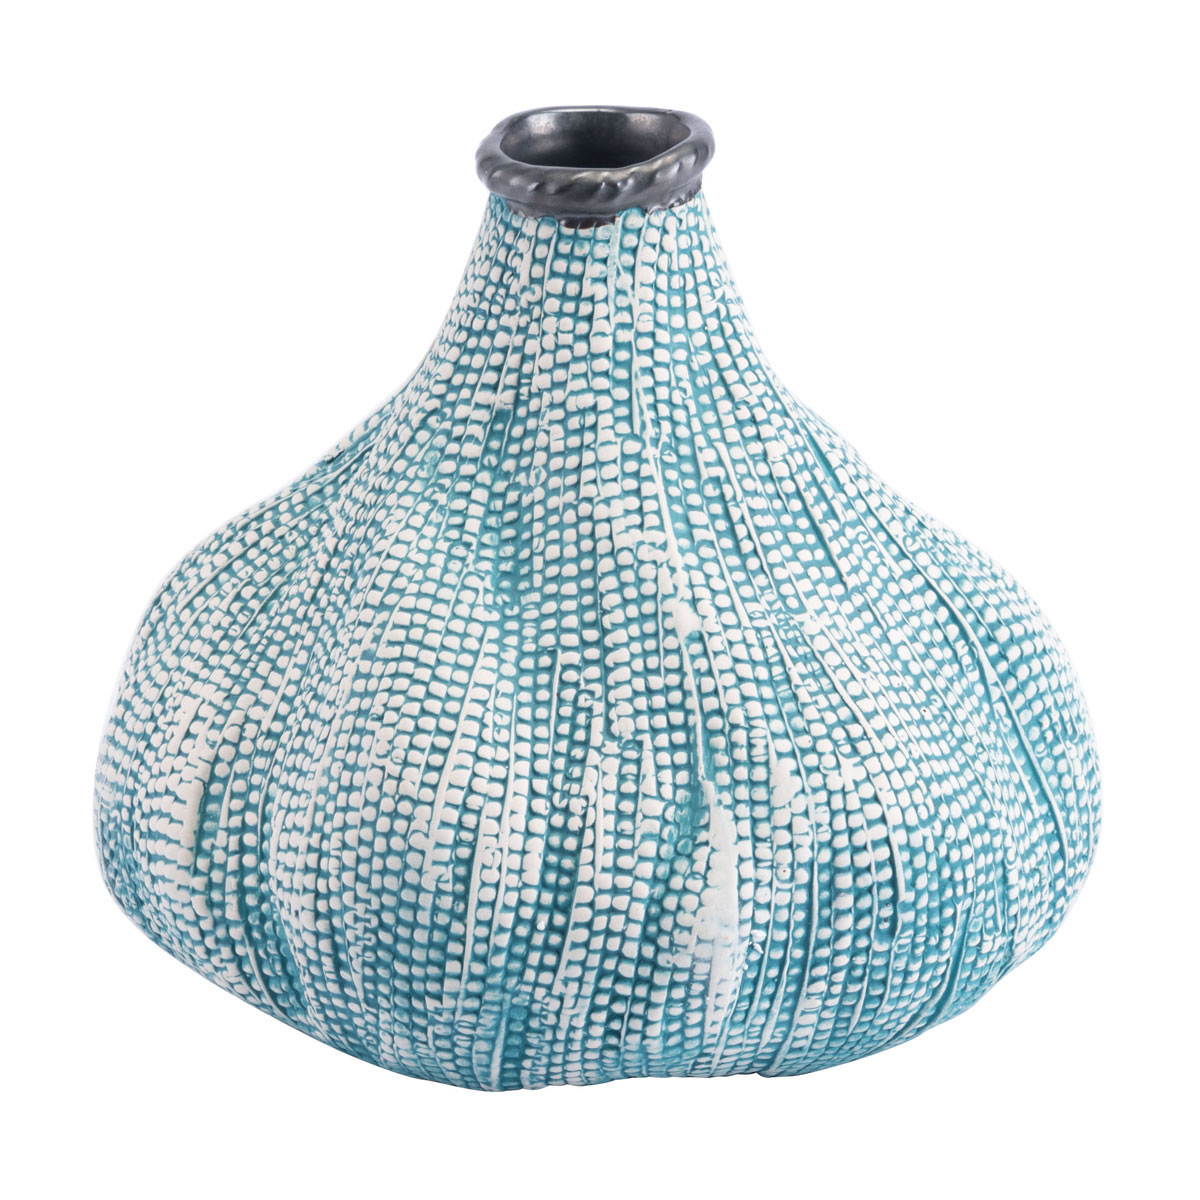 10" x 10" x 9.3" Teal, Ceramic, Small Vase